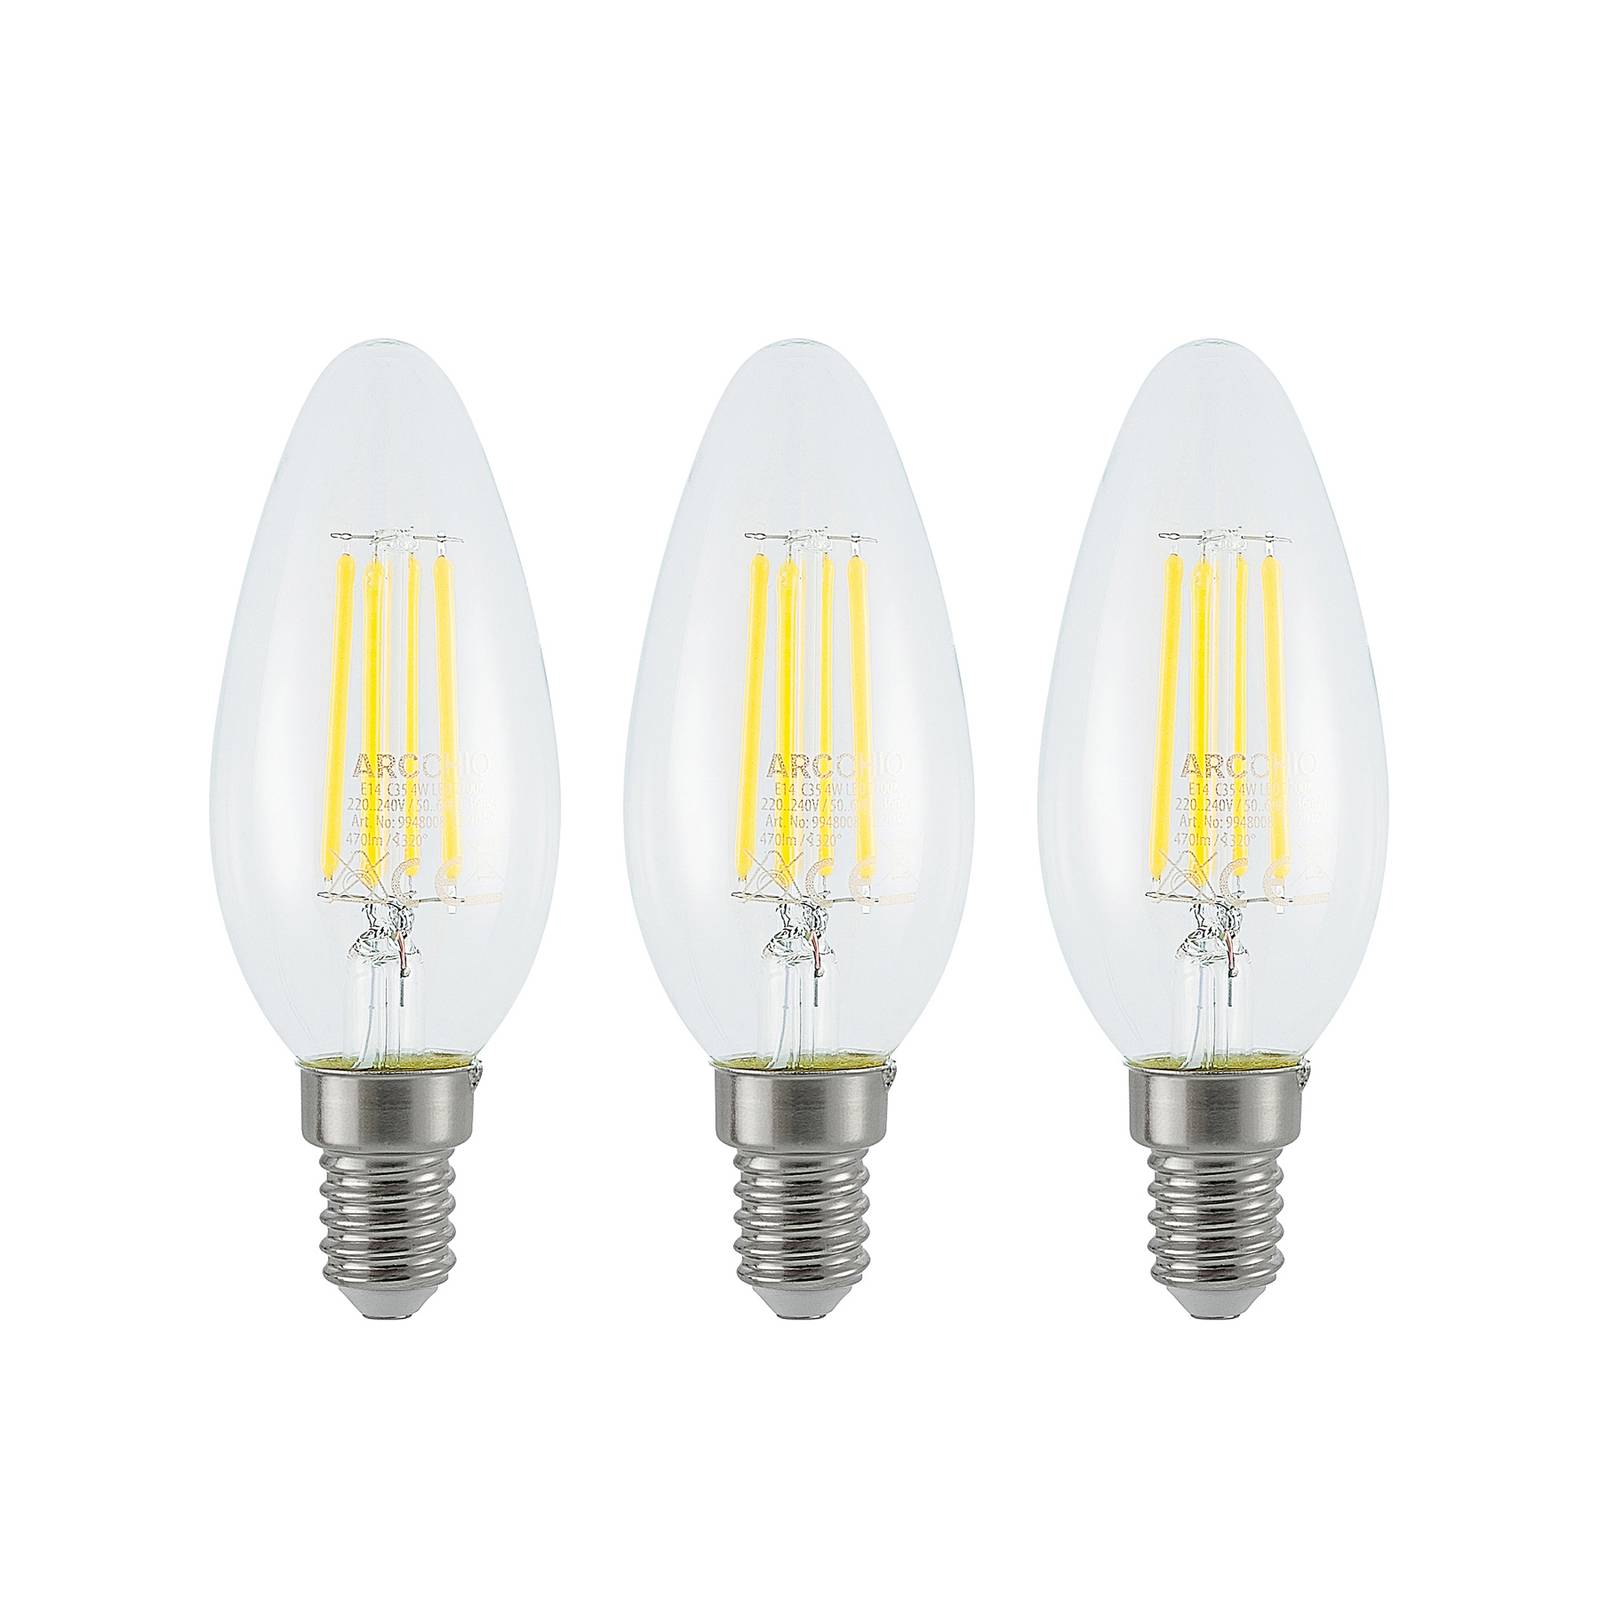 LED izzó filament E14 4 W 827 3-step-dimmer 3 klt